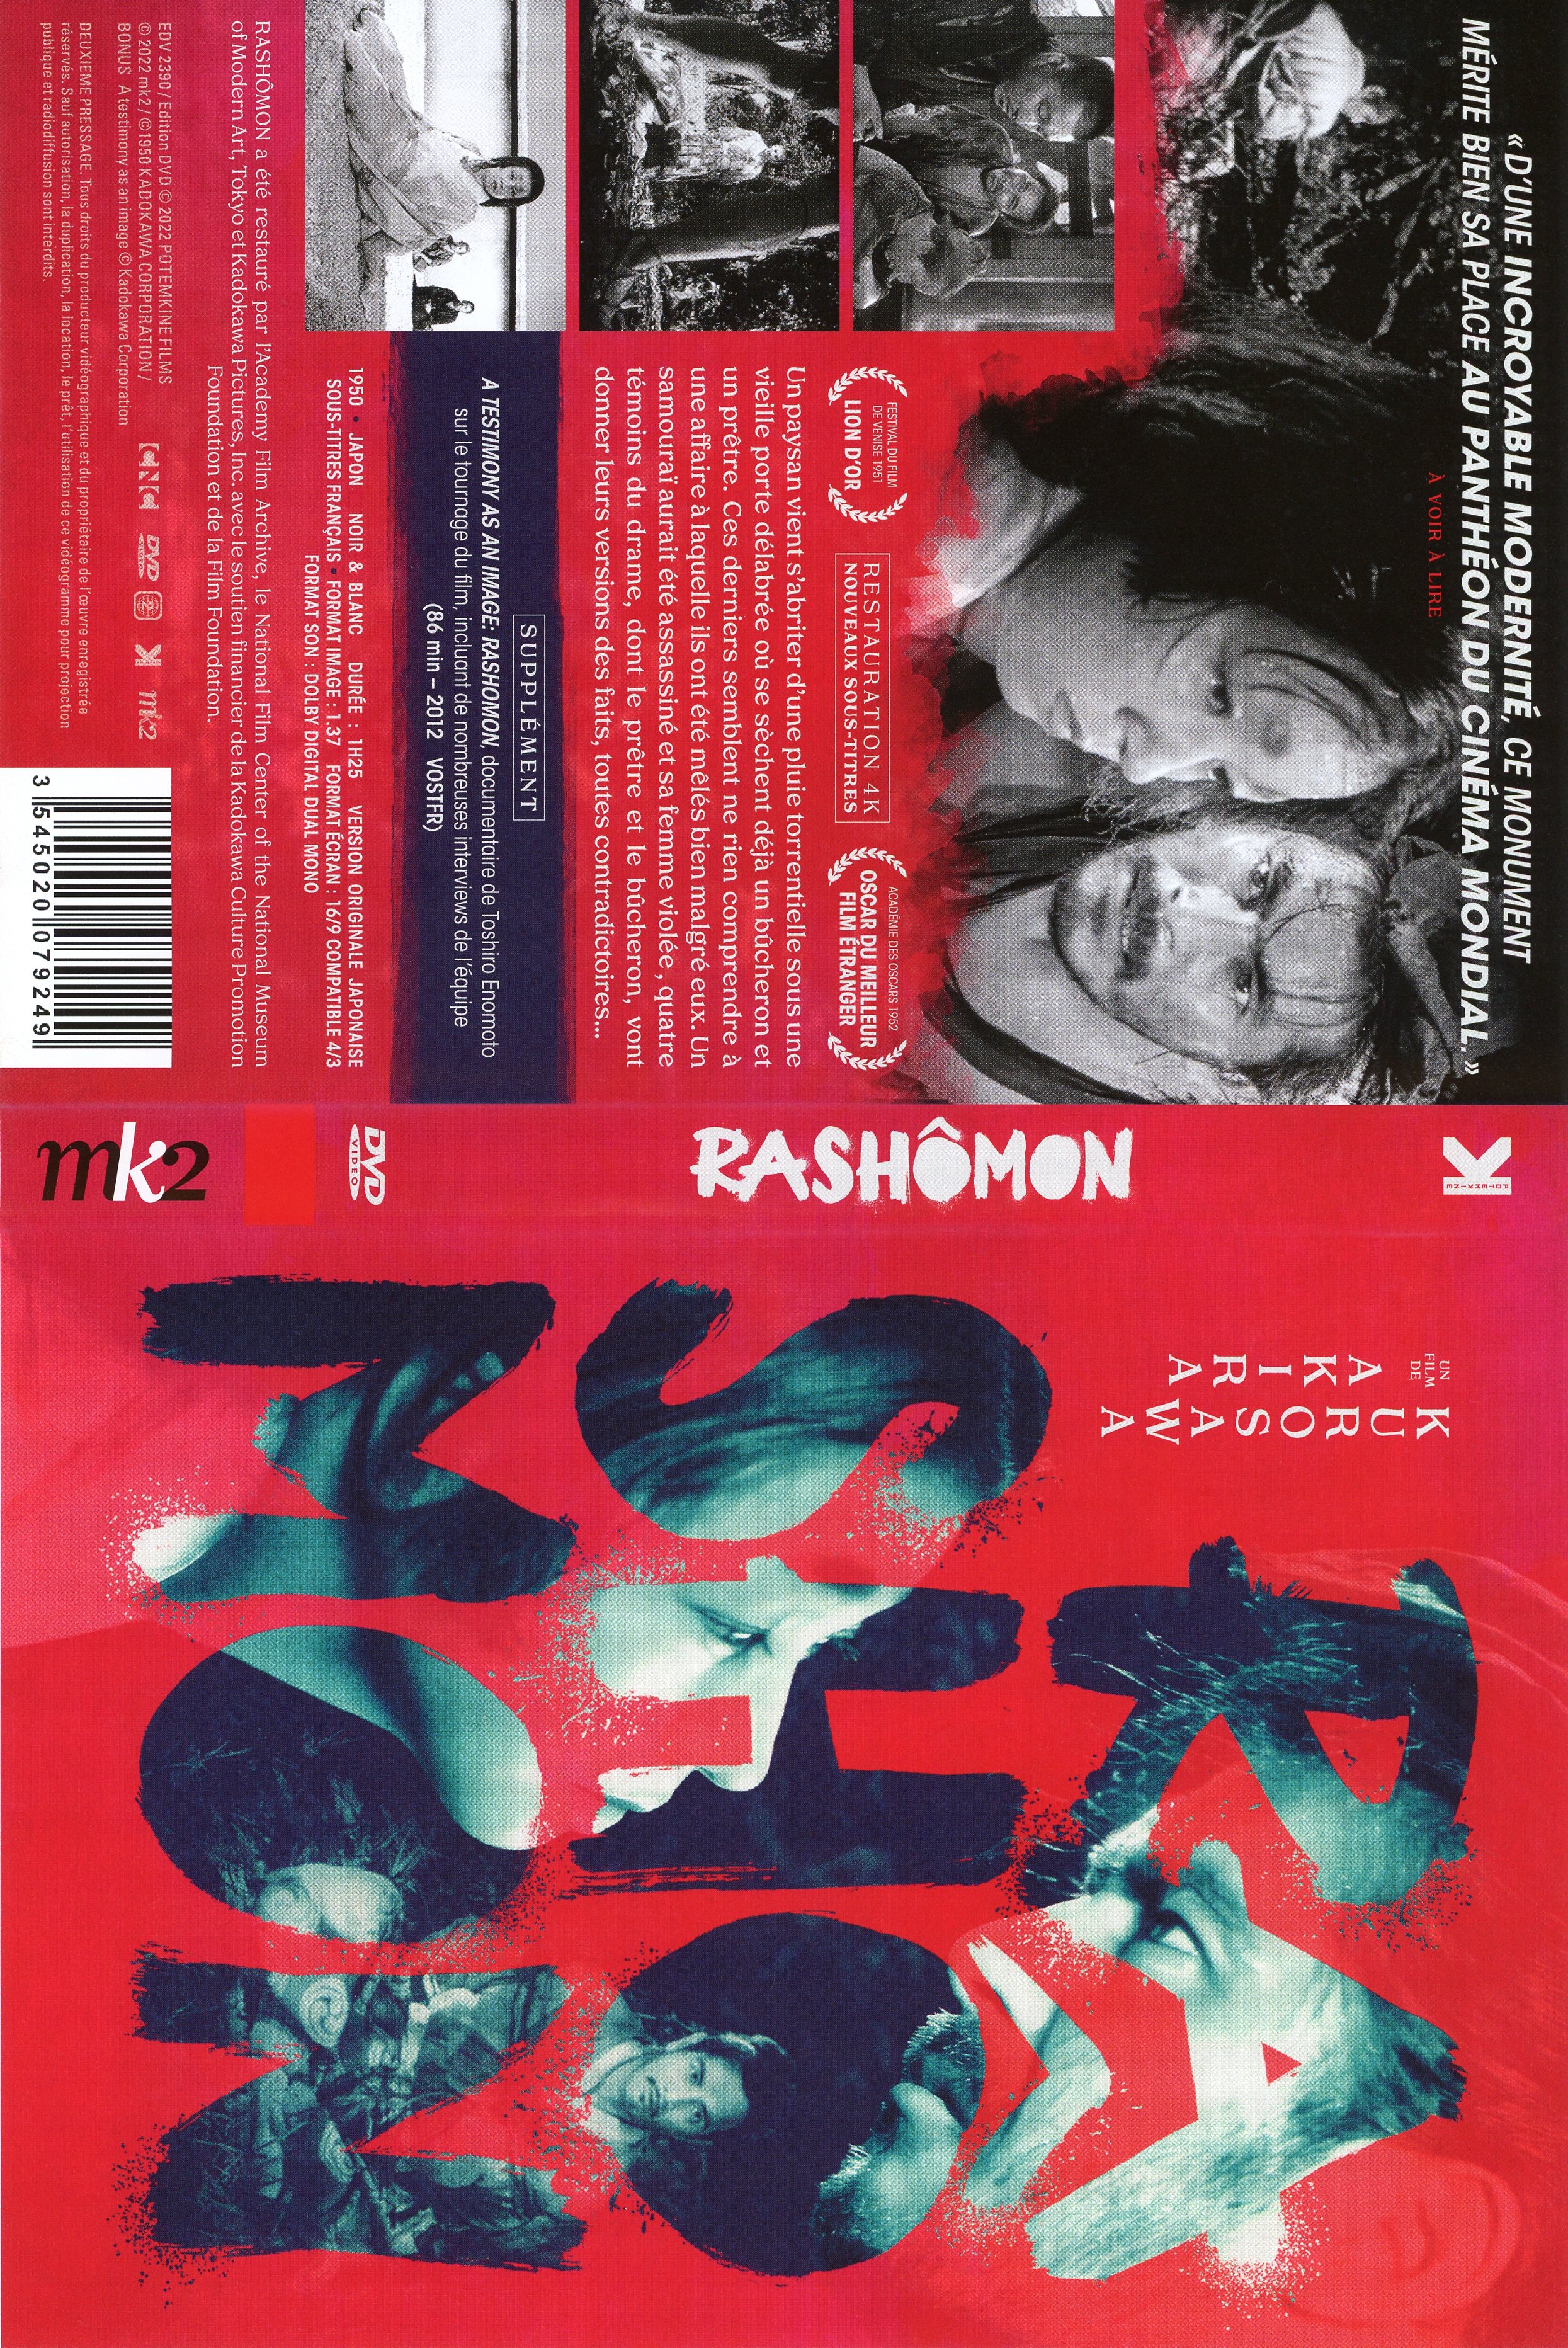 Jaquette DVD Rashomon v2